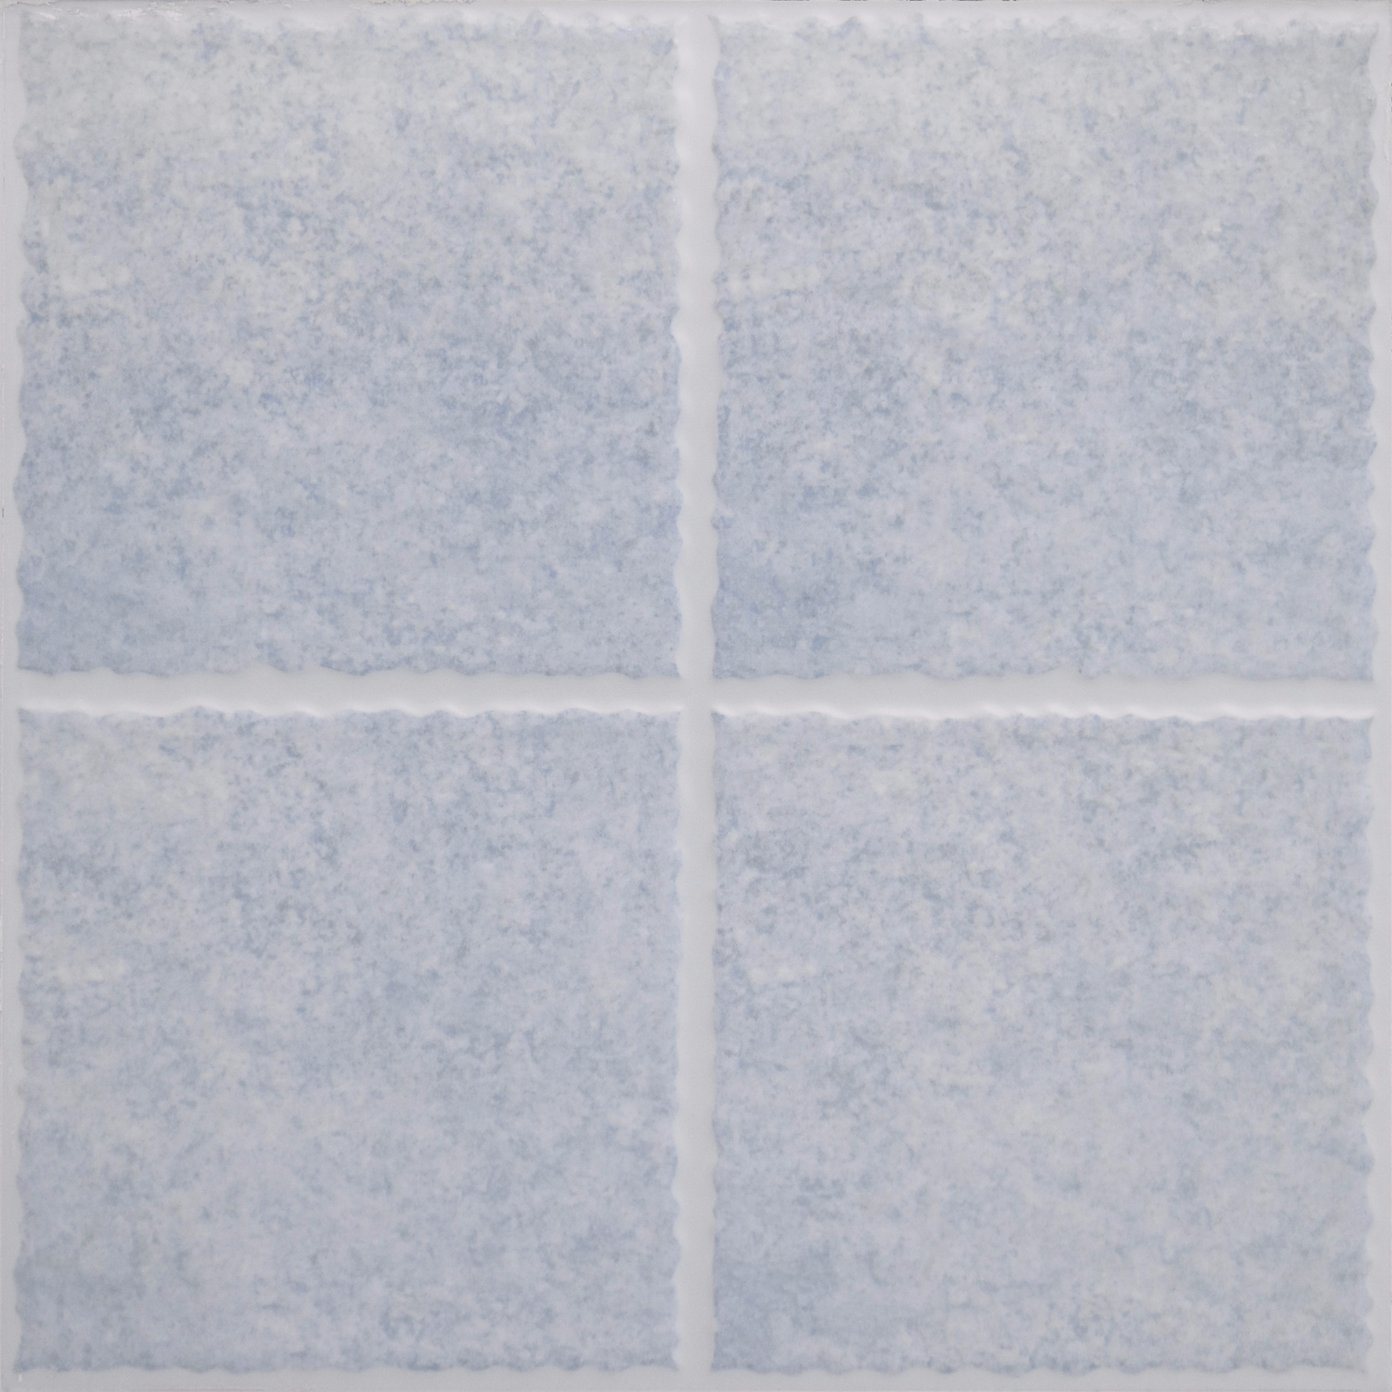 Ceramic Floor Tile Wall Tiles for 30X30